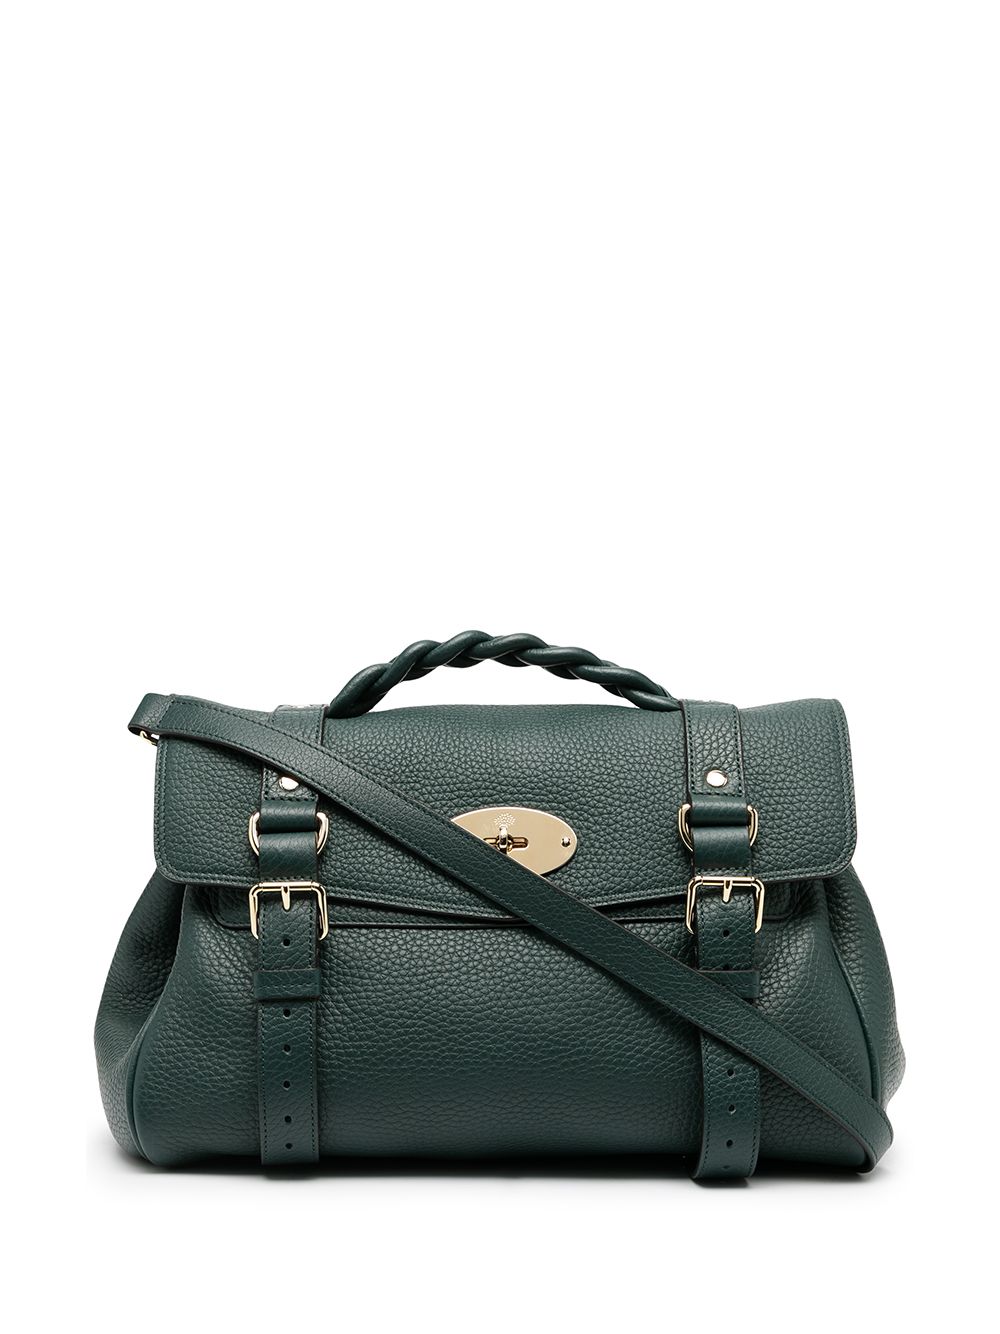 Mulberry Alexa satchel bag - Green von Mulberry